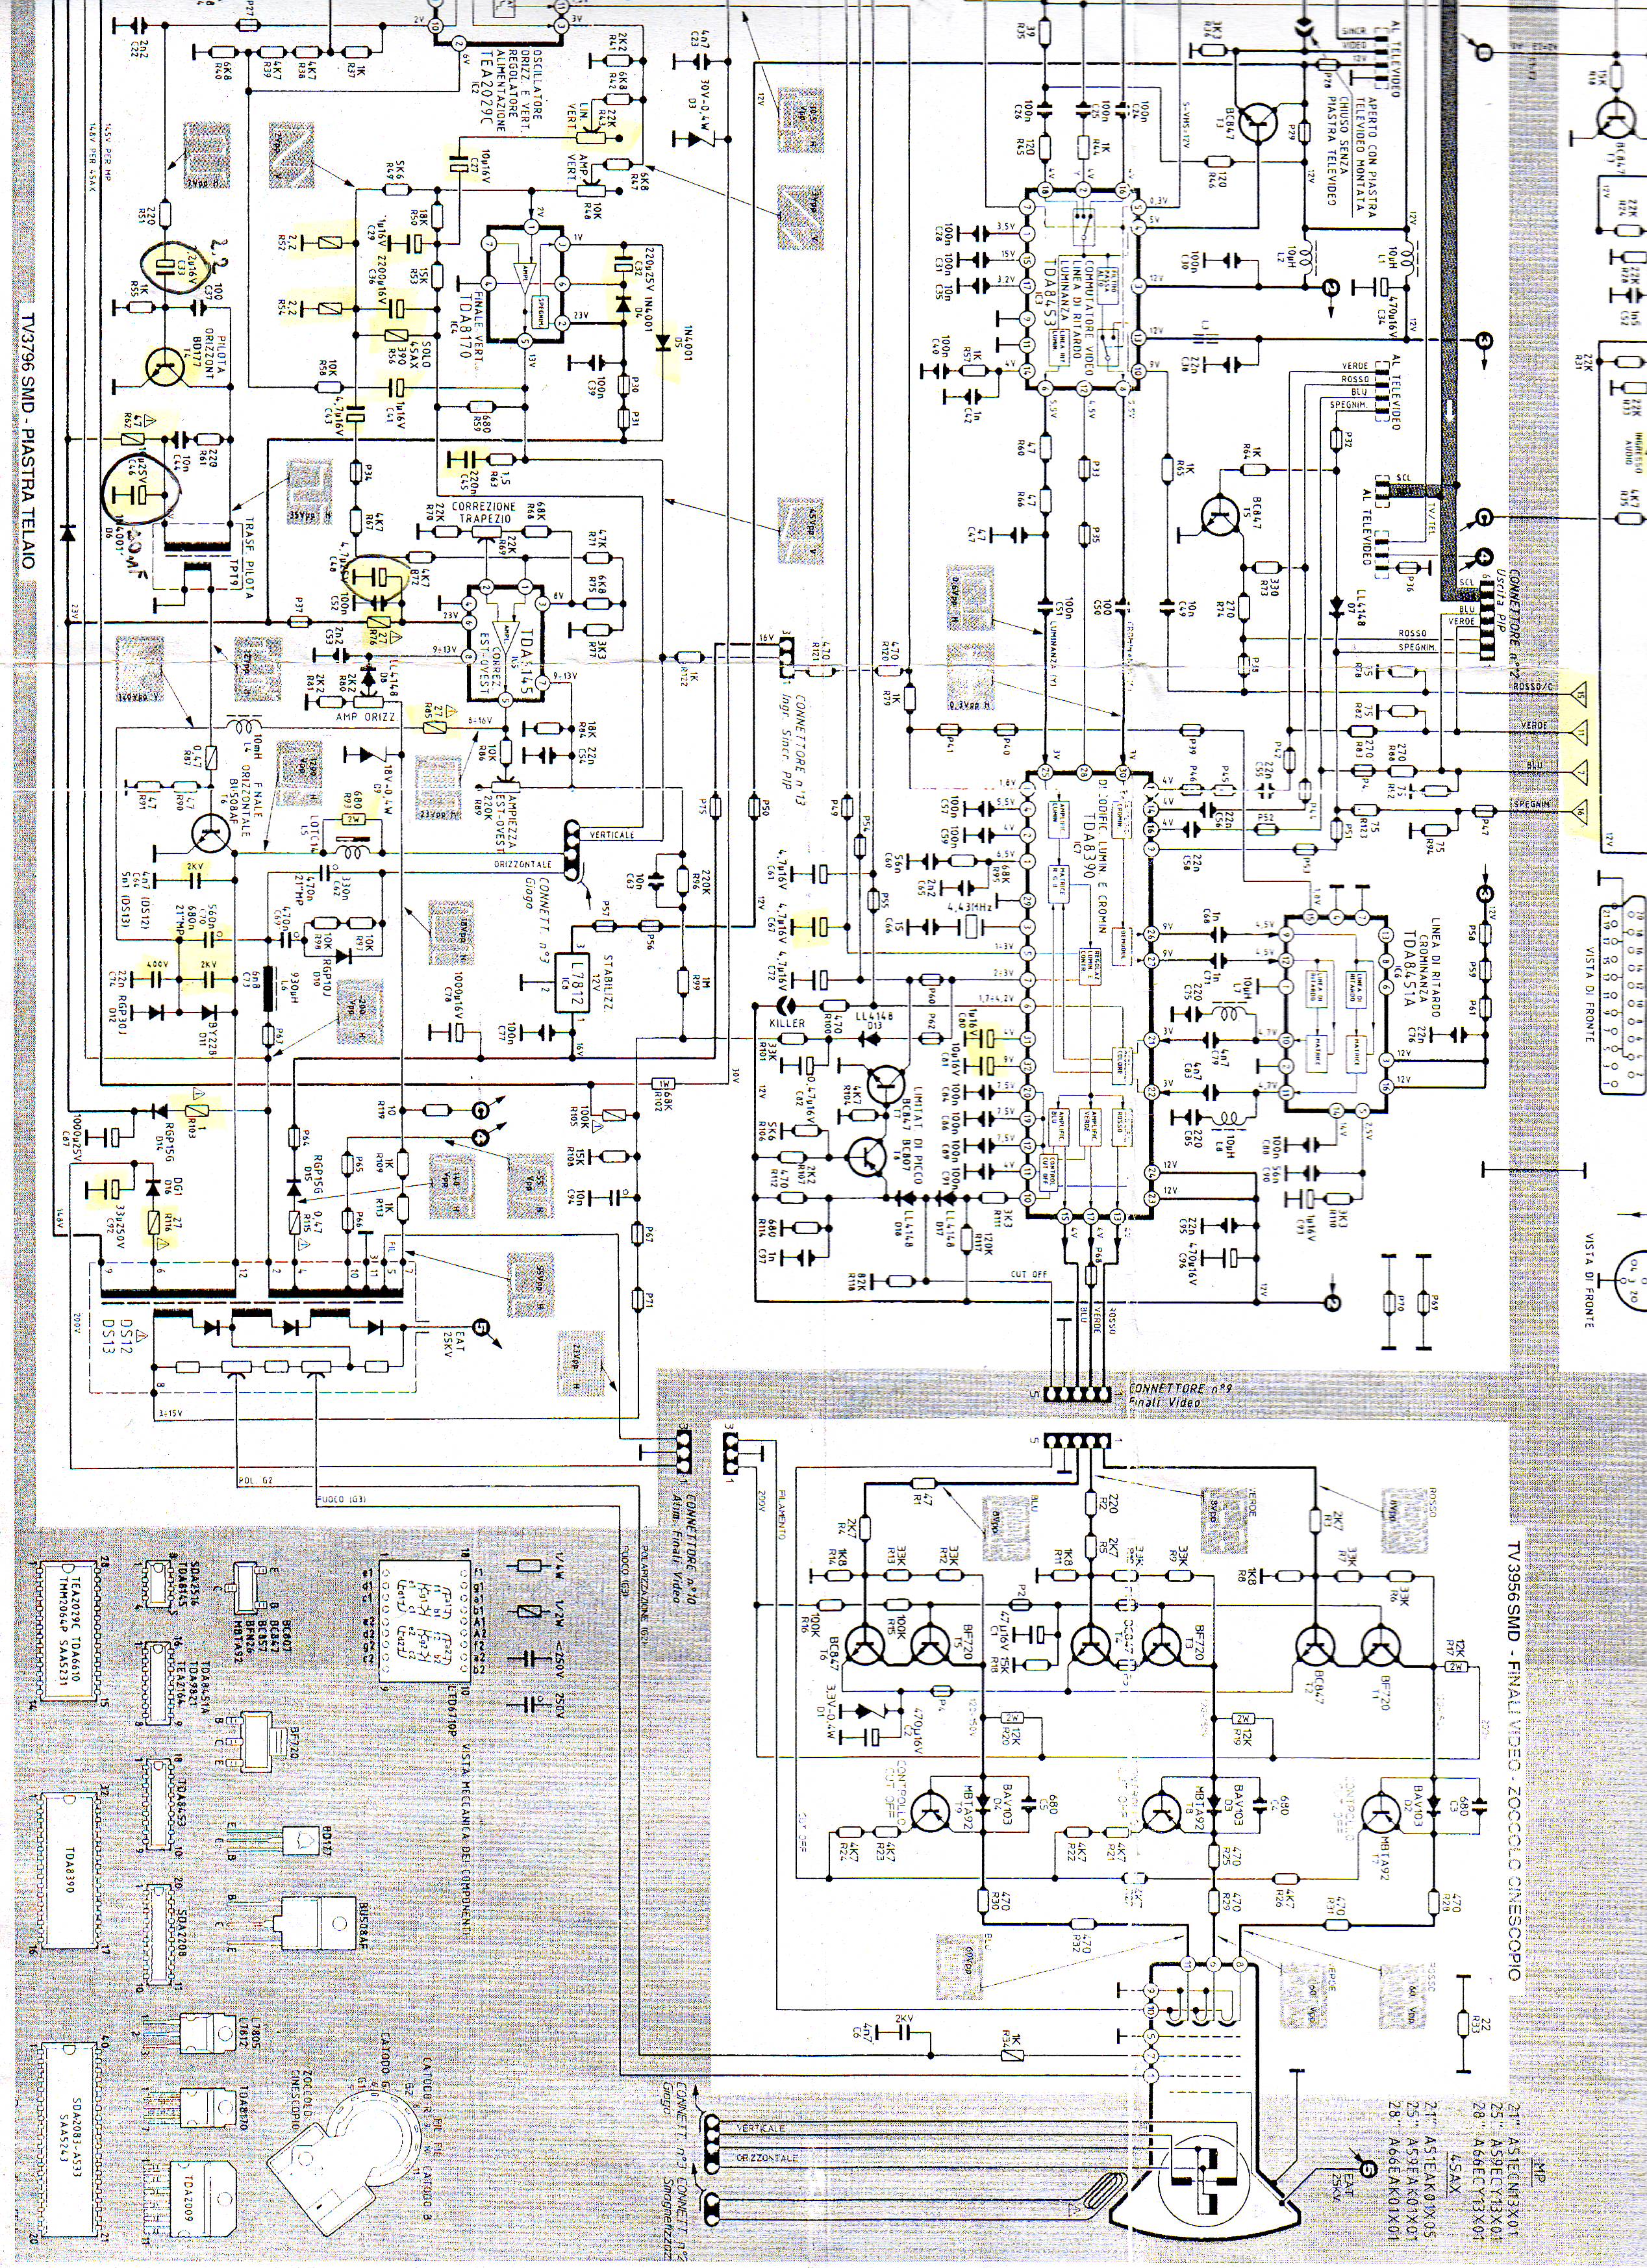 MIVAR 28S1 schematic